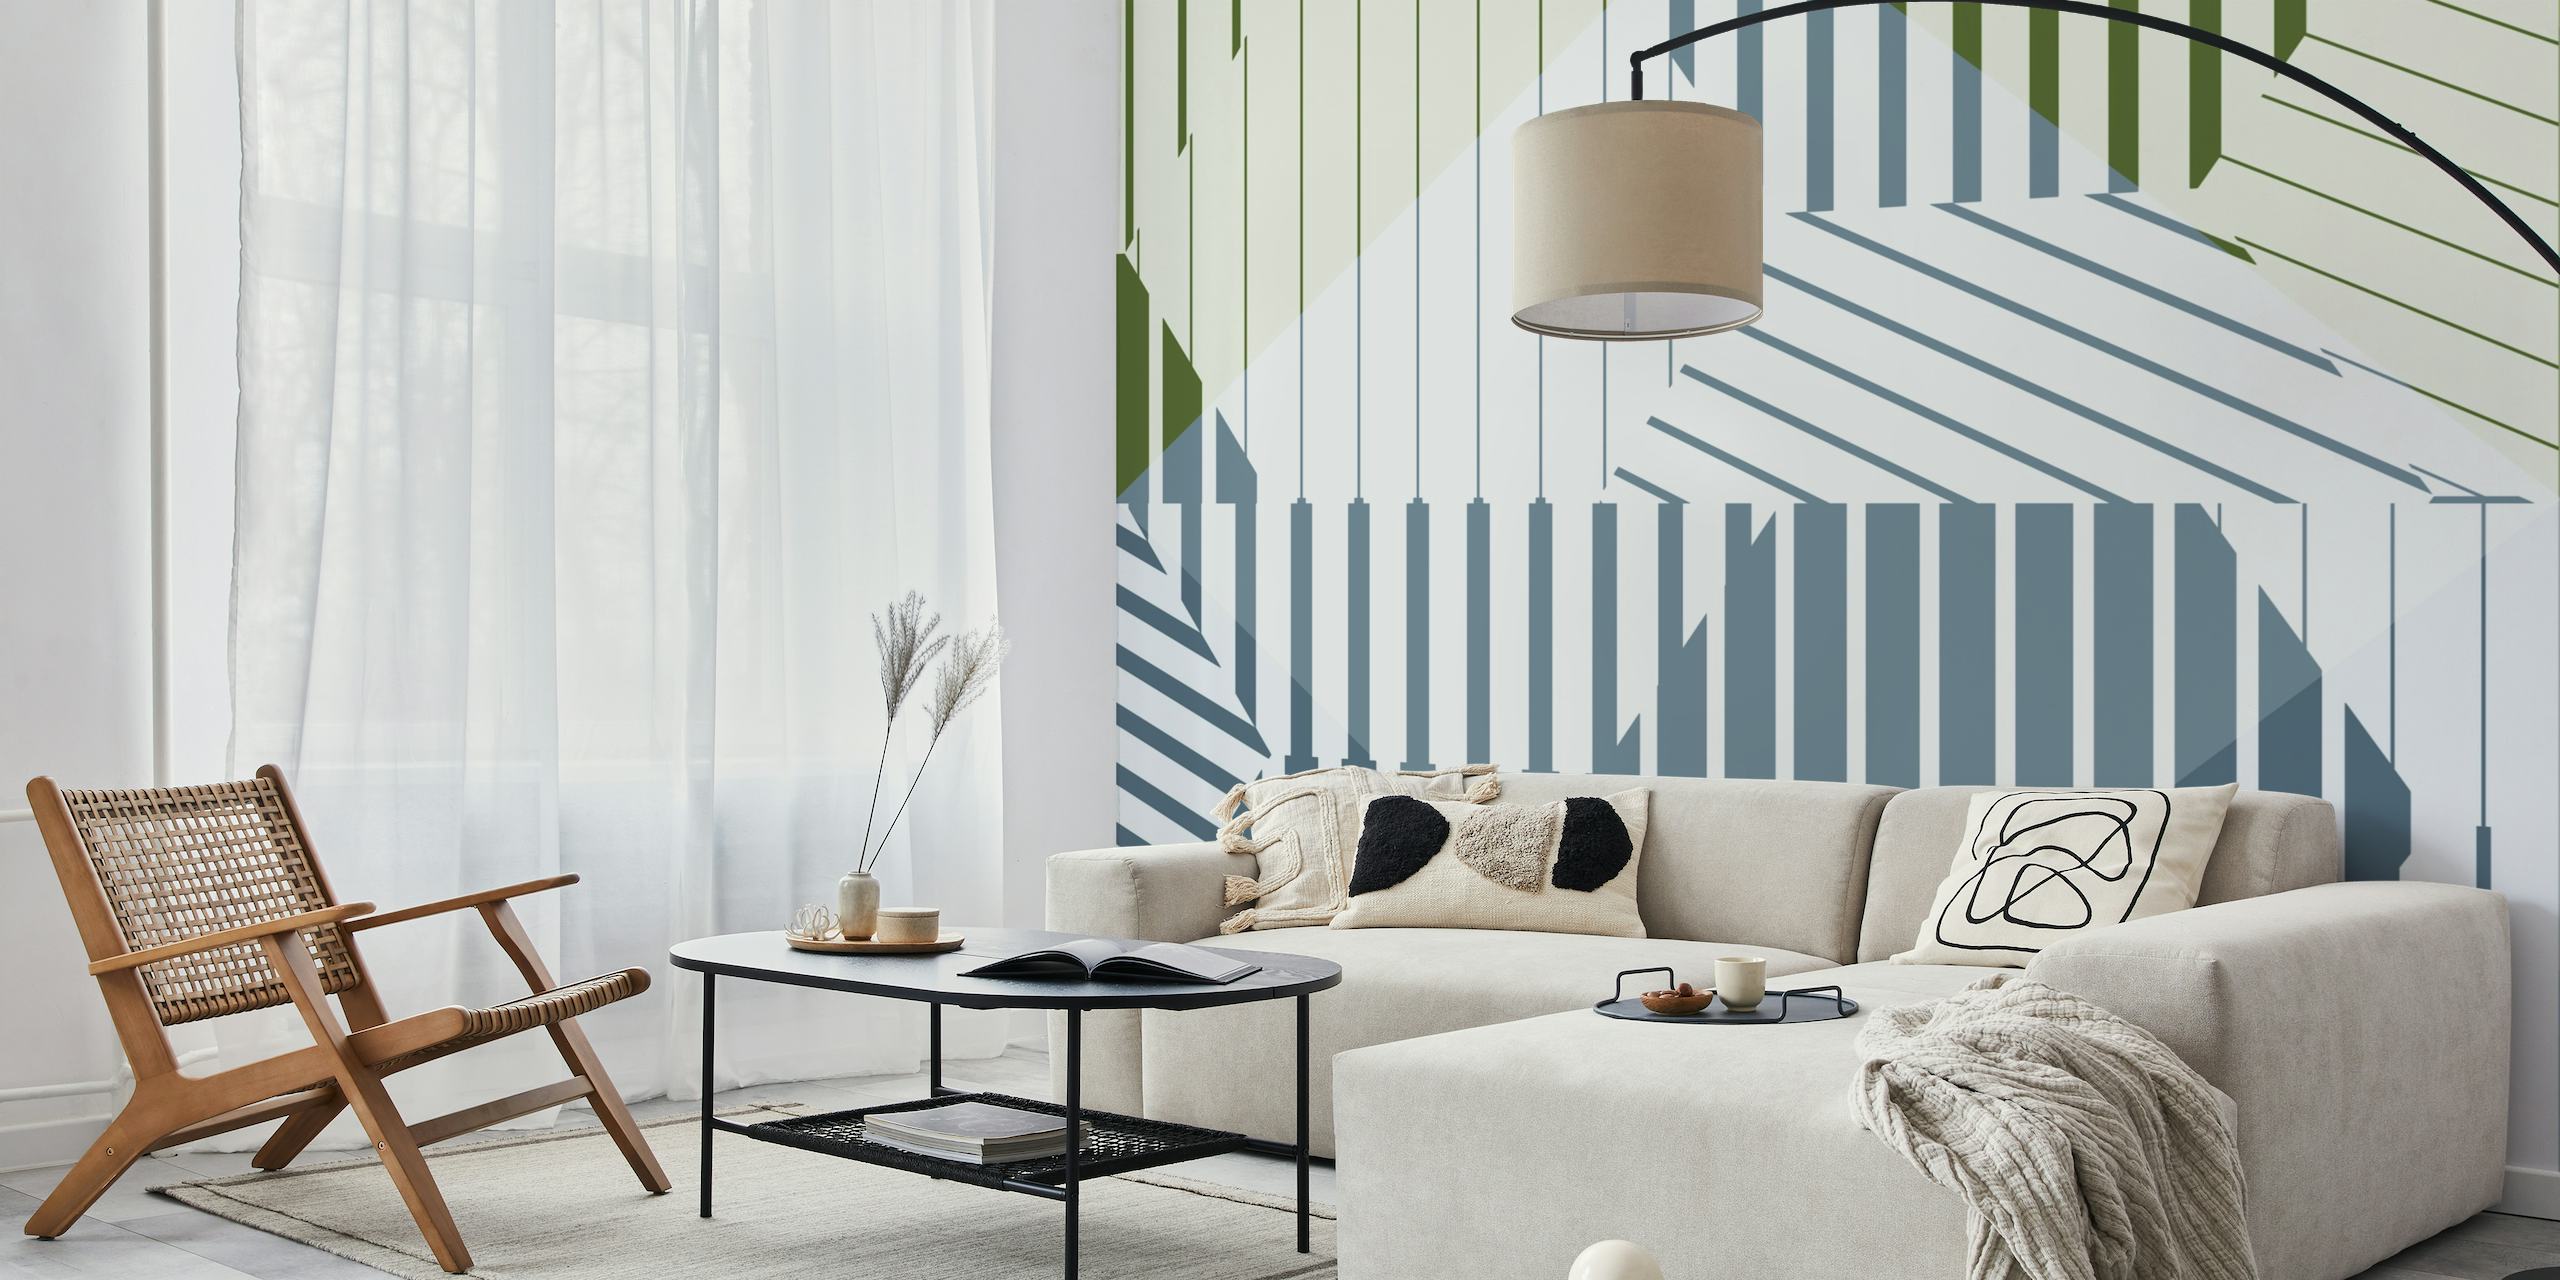 Fotomural modernista minimalista minimalista con formas geométricas azules y verdes sobre fondo blanco